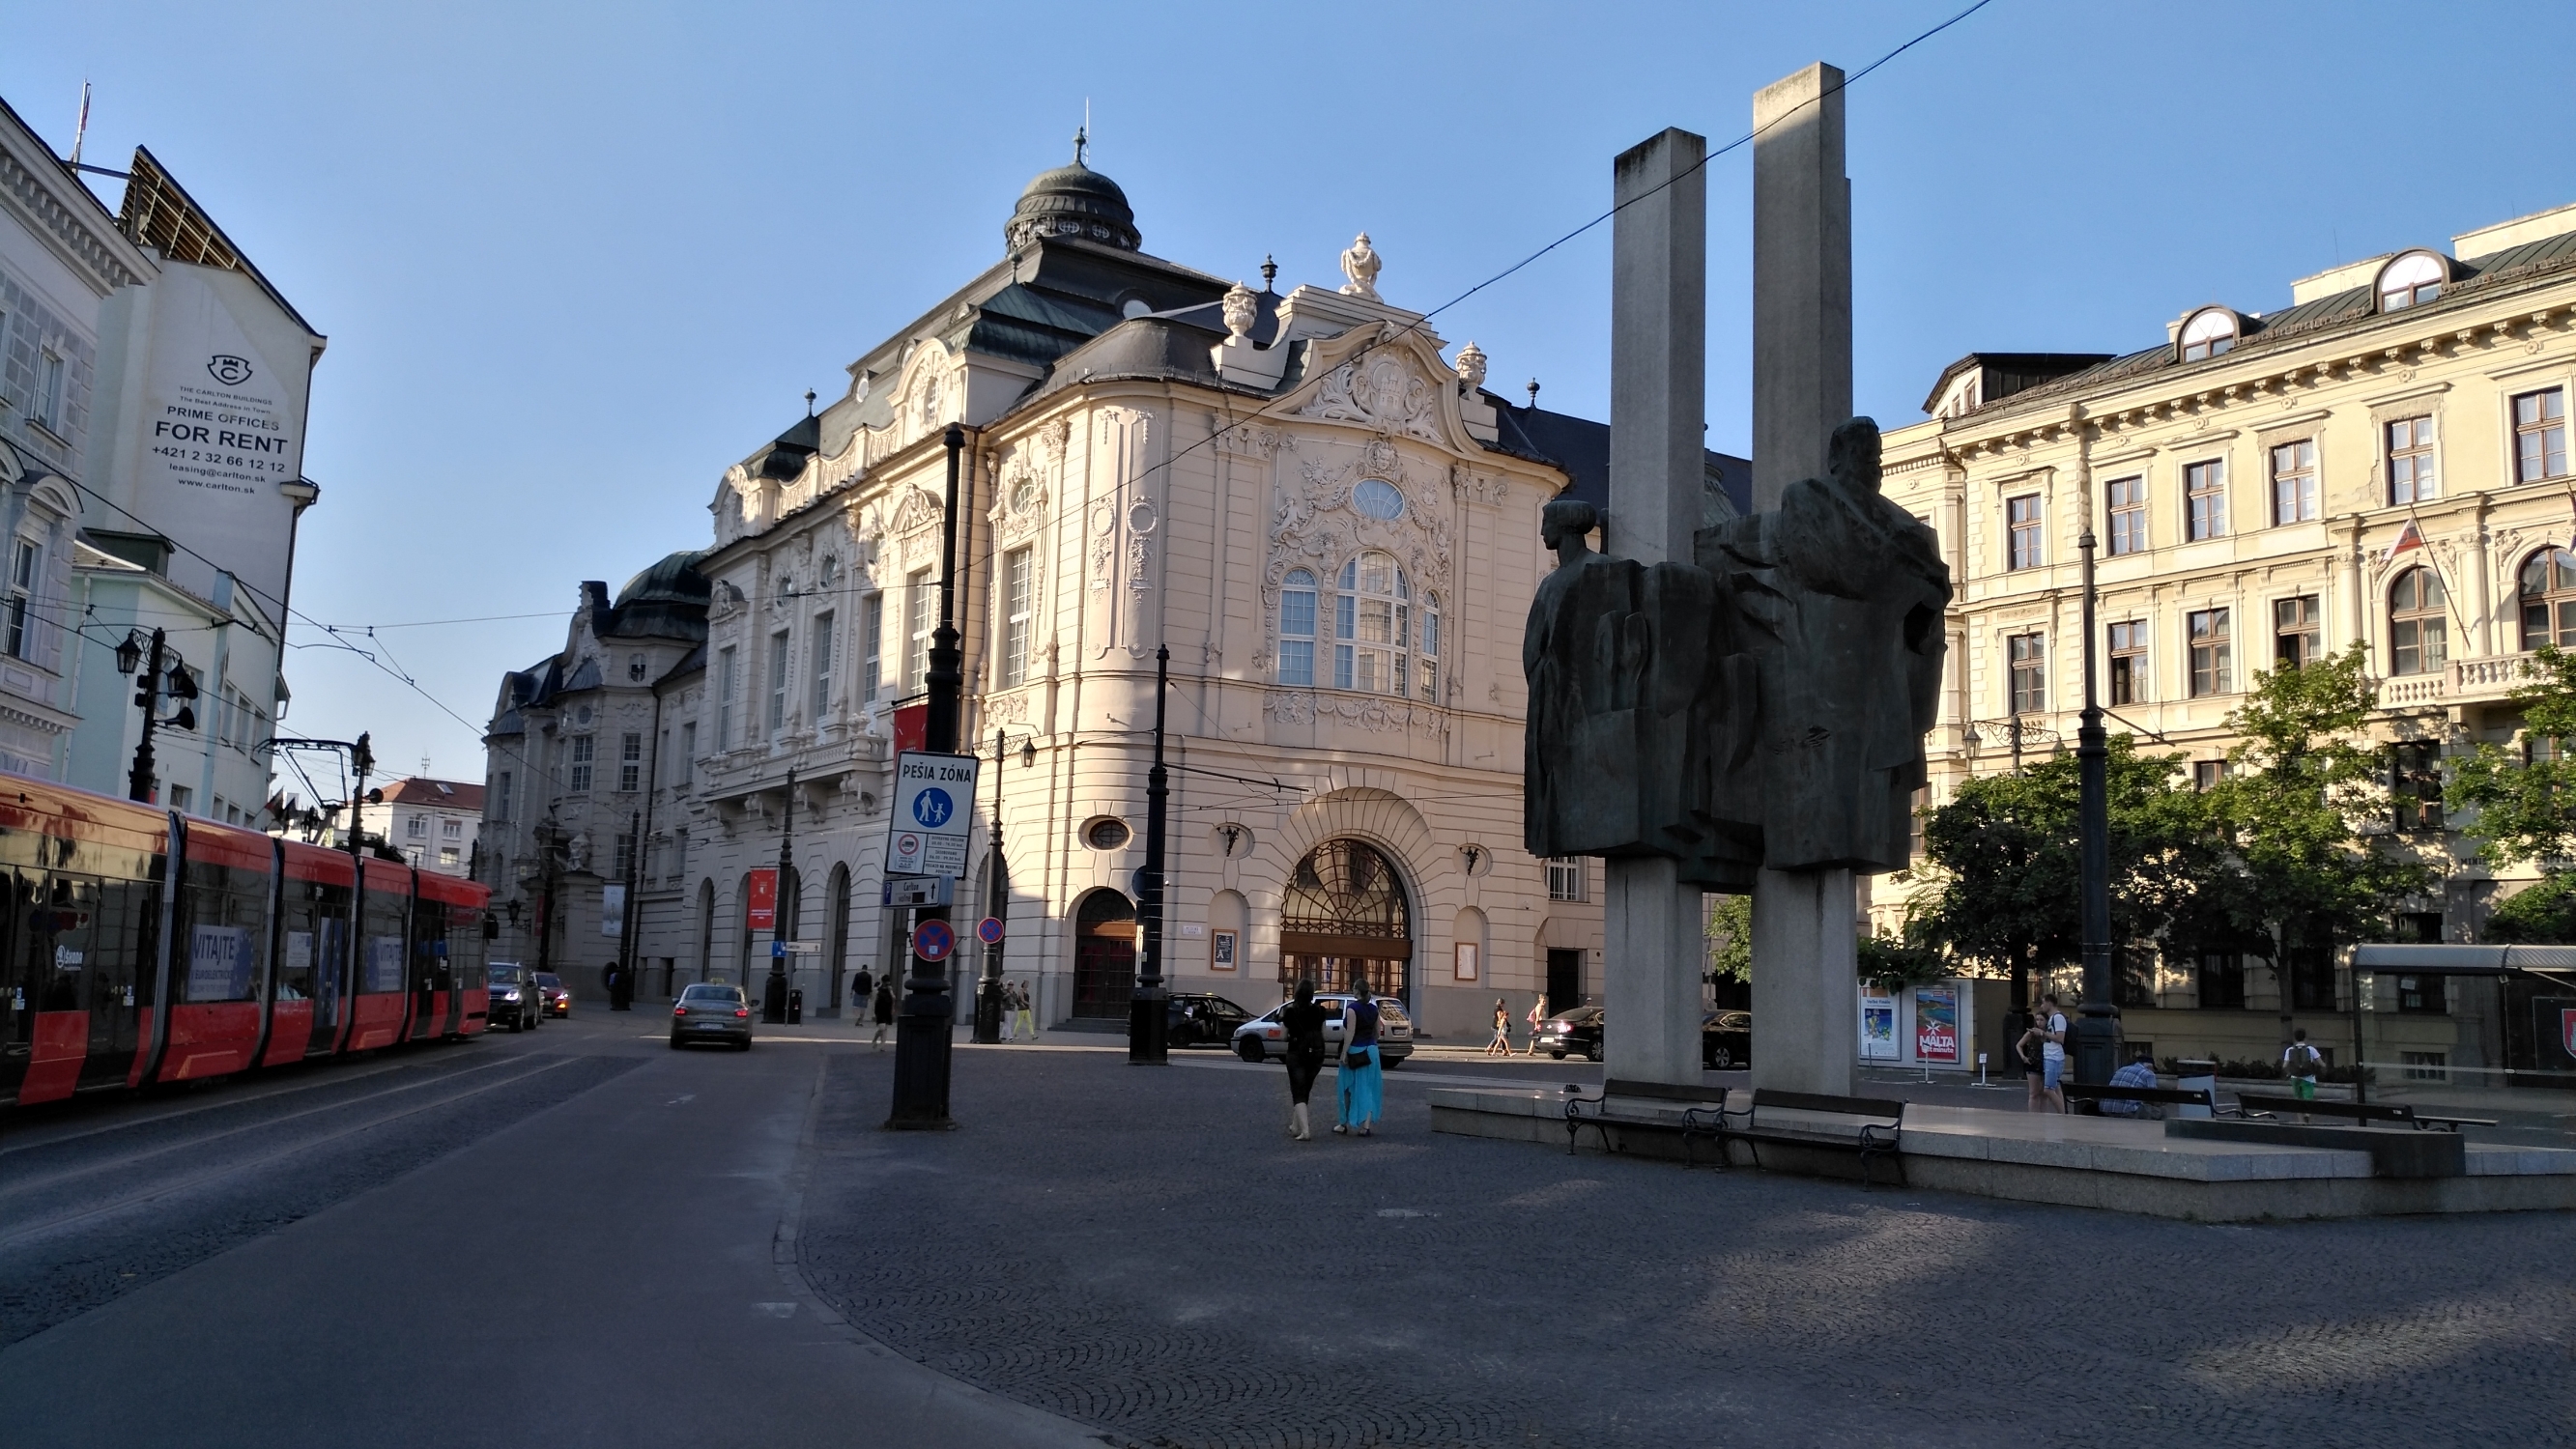 斯洛伐克首都布拉迪斯拉发，街道上的雕塑很美，当地物价也很便宜。比较宜居。当地市民对中国人也比较友好。